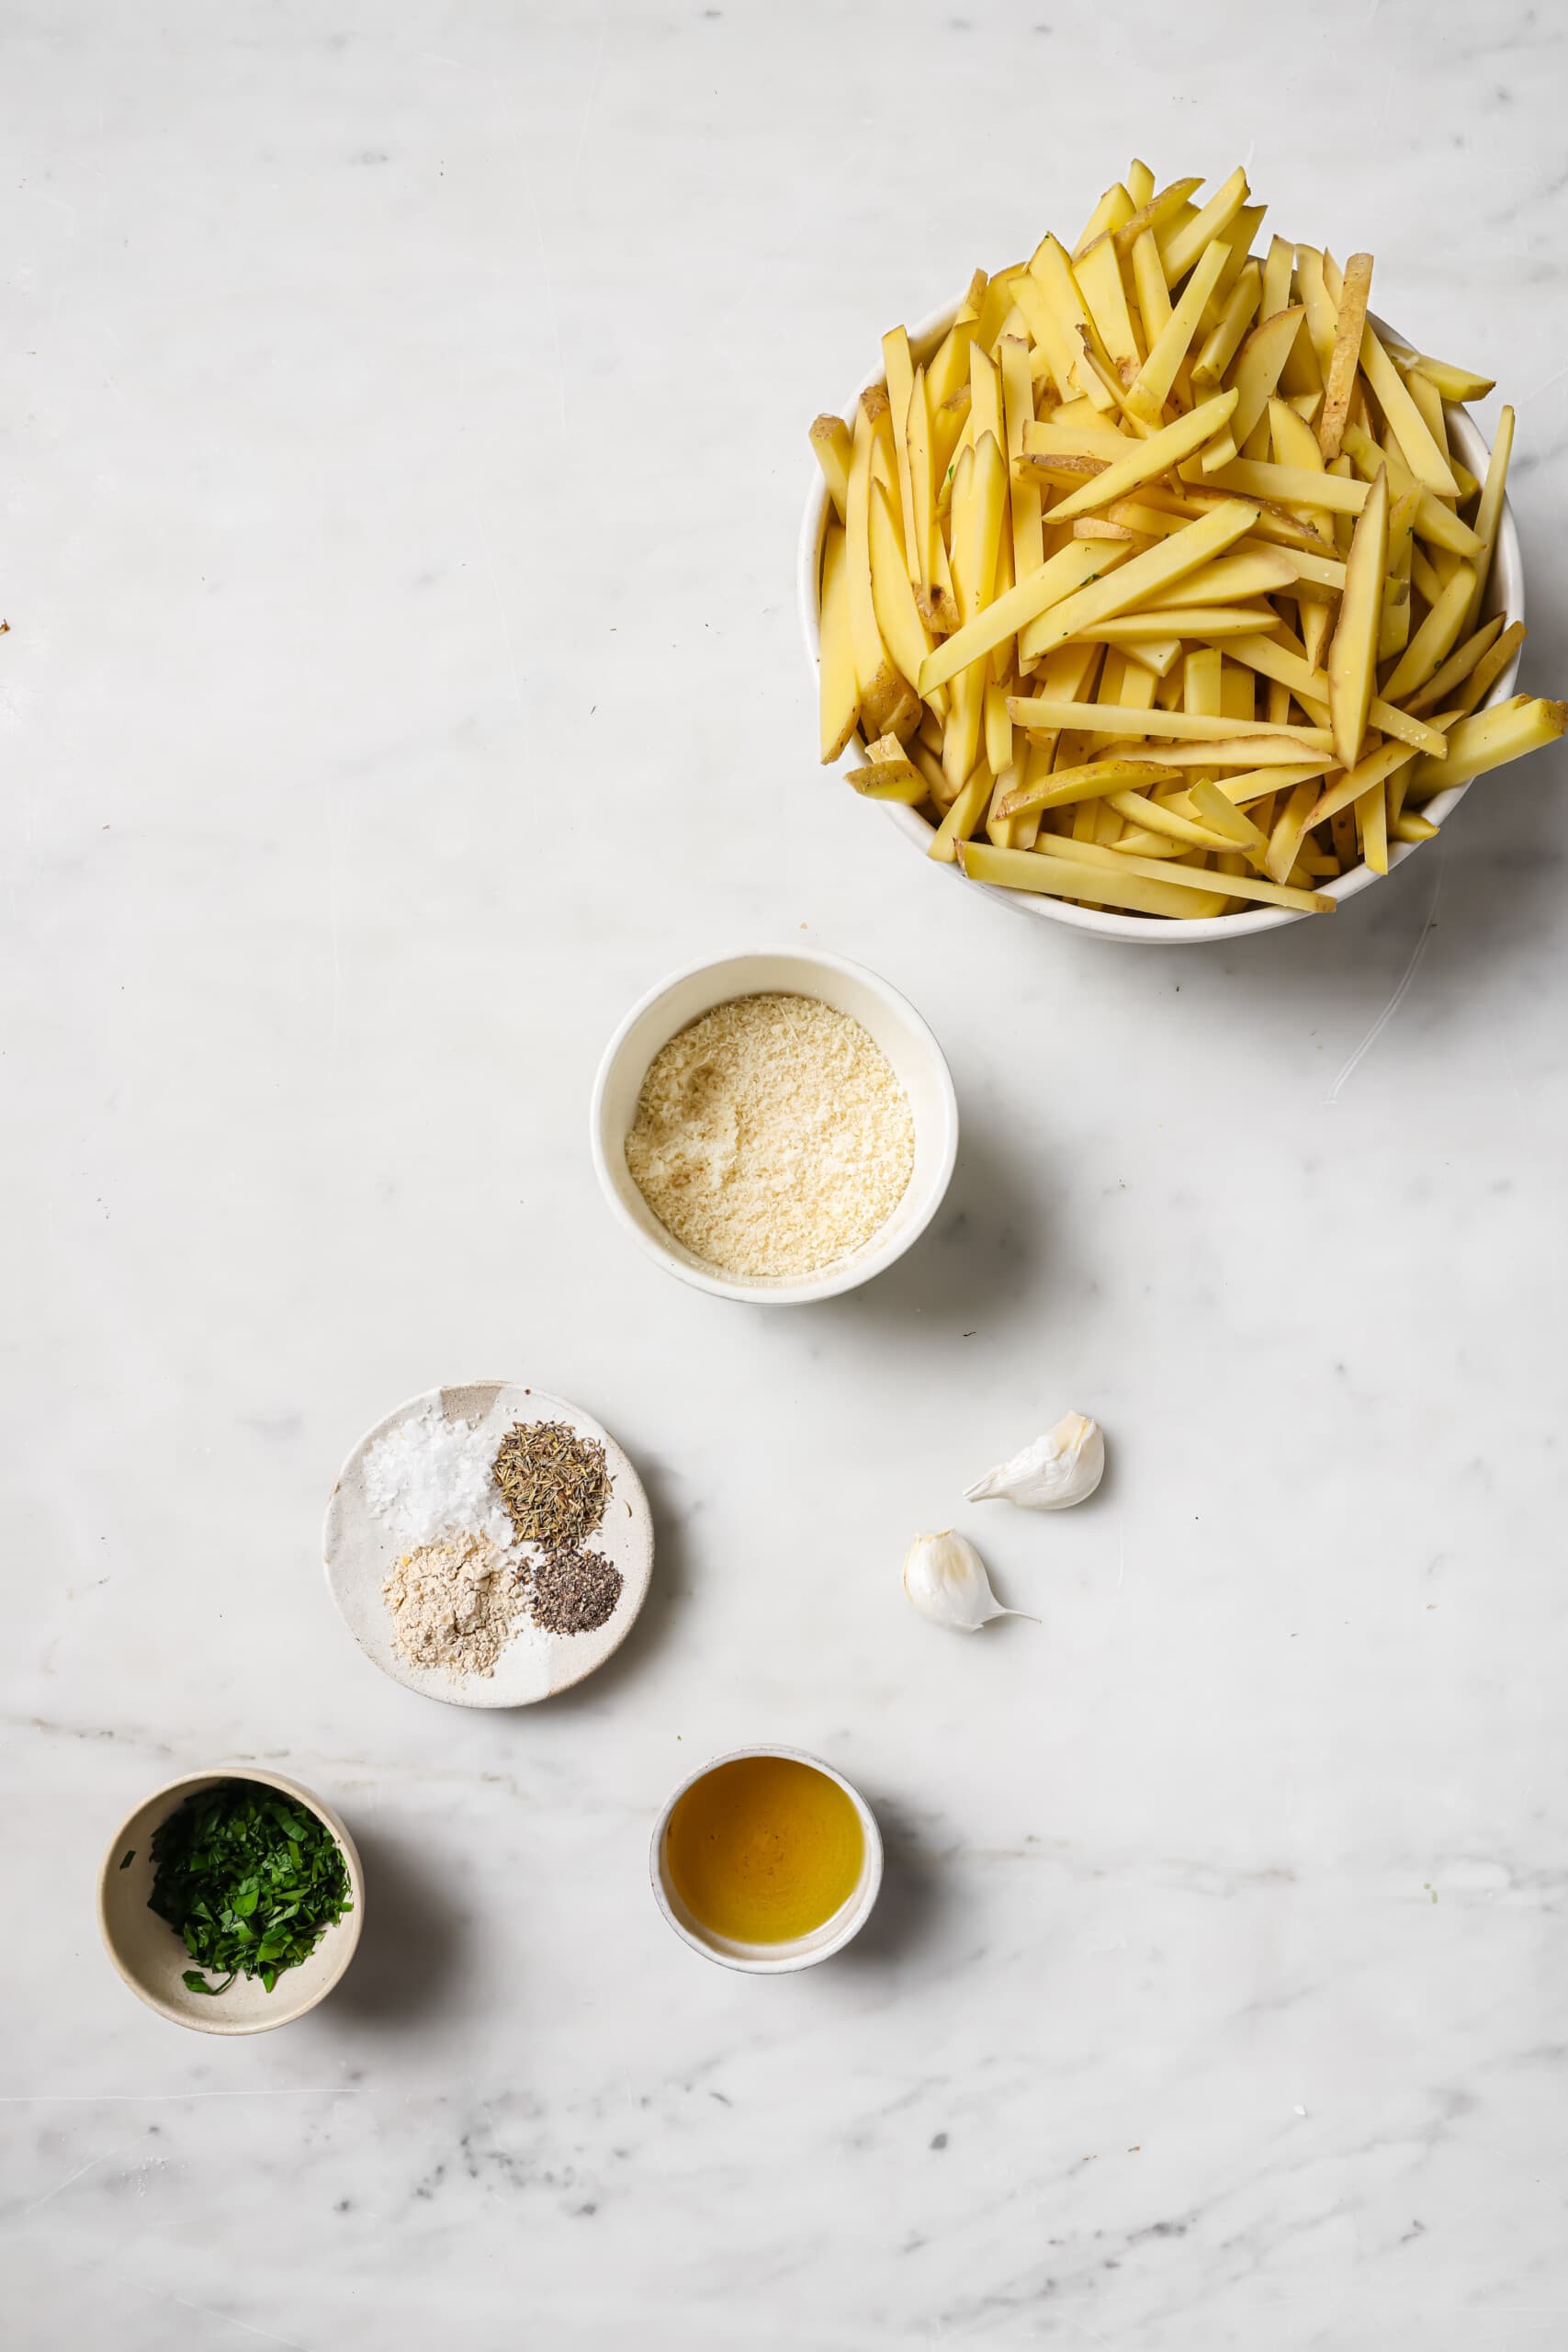 Ingredients for garlic parmesan fries. 